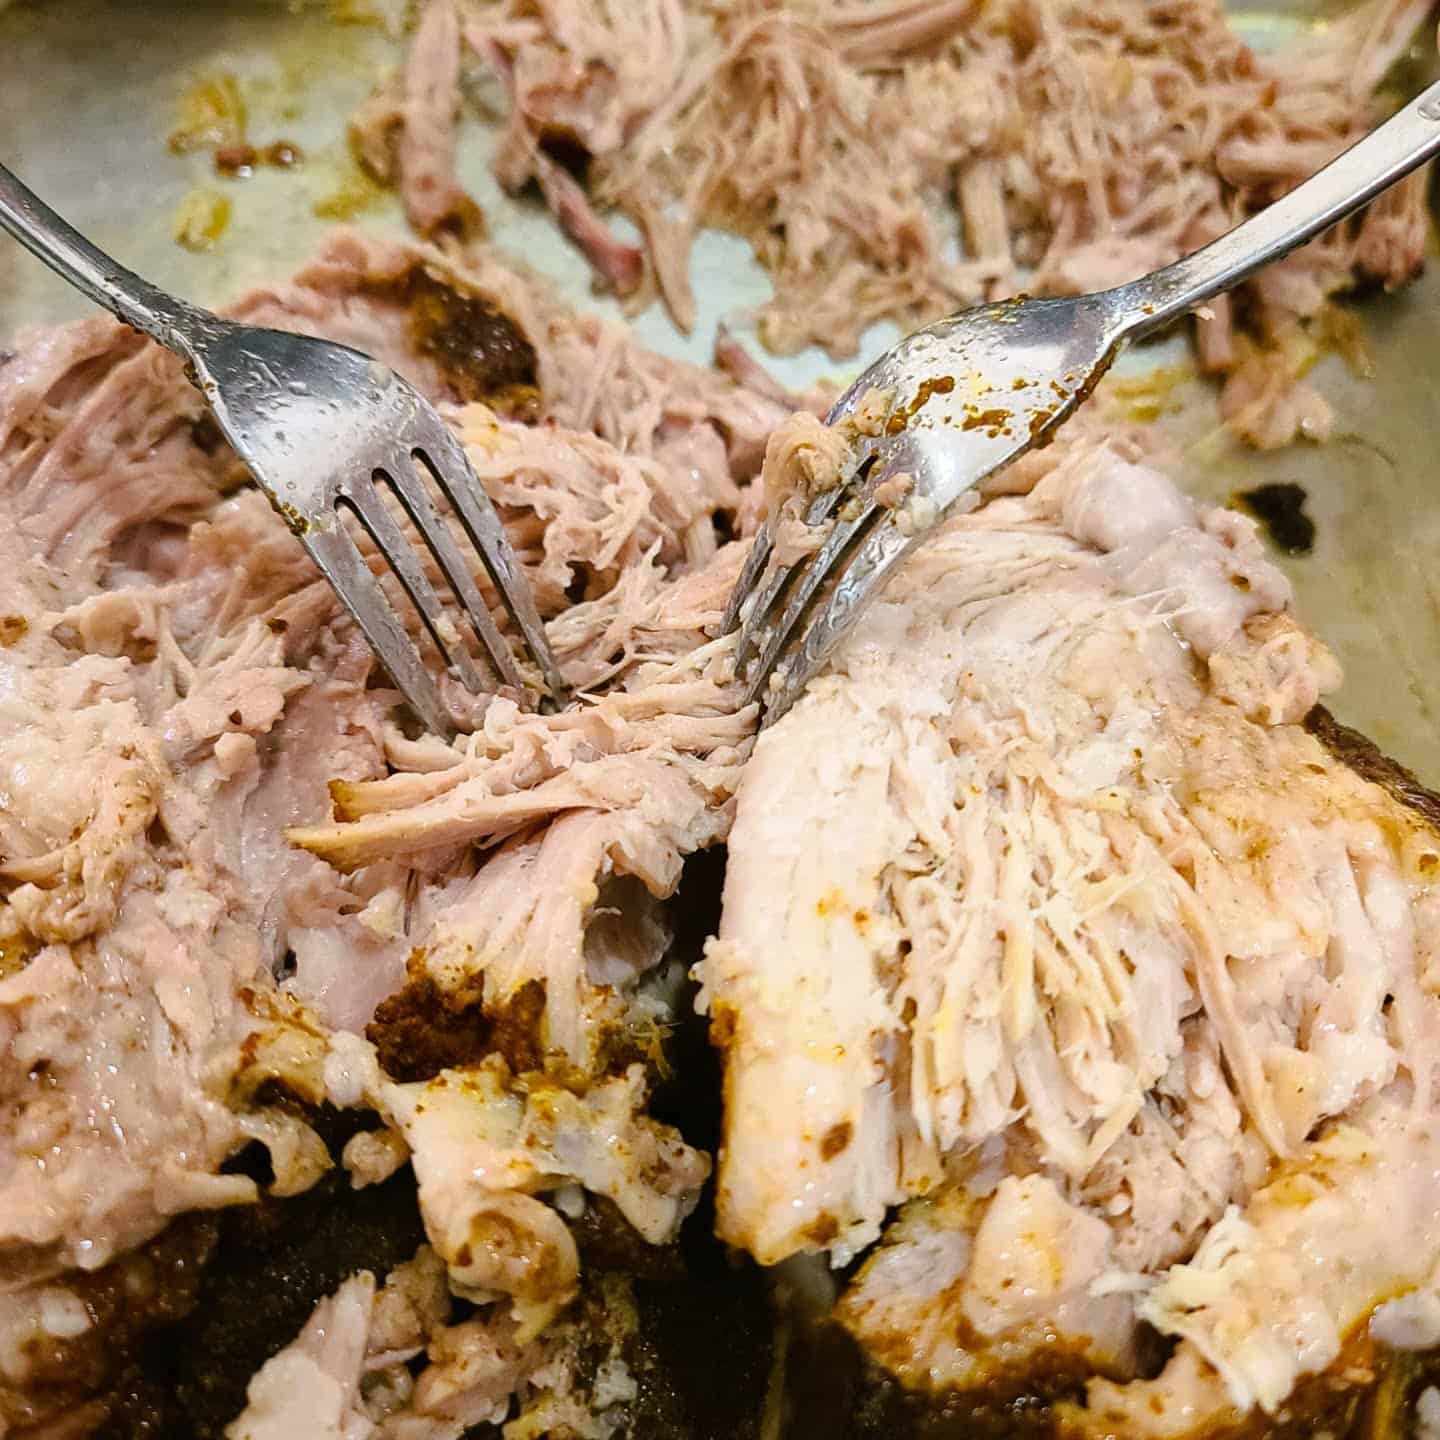 Once removed, start shredded the pork with forks.